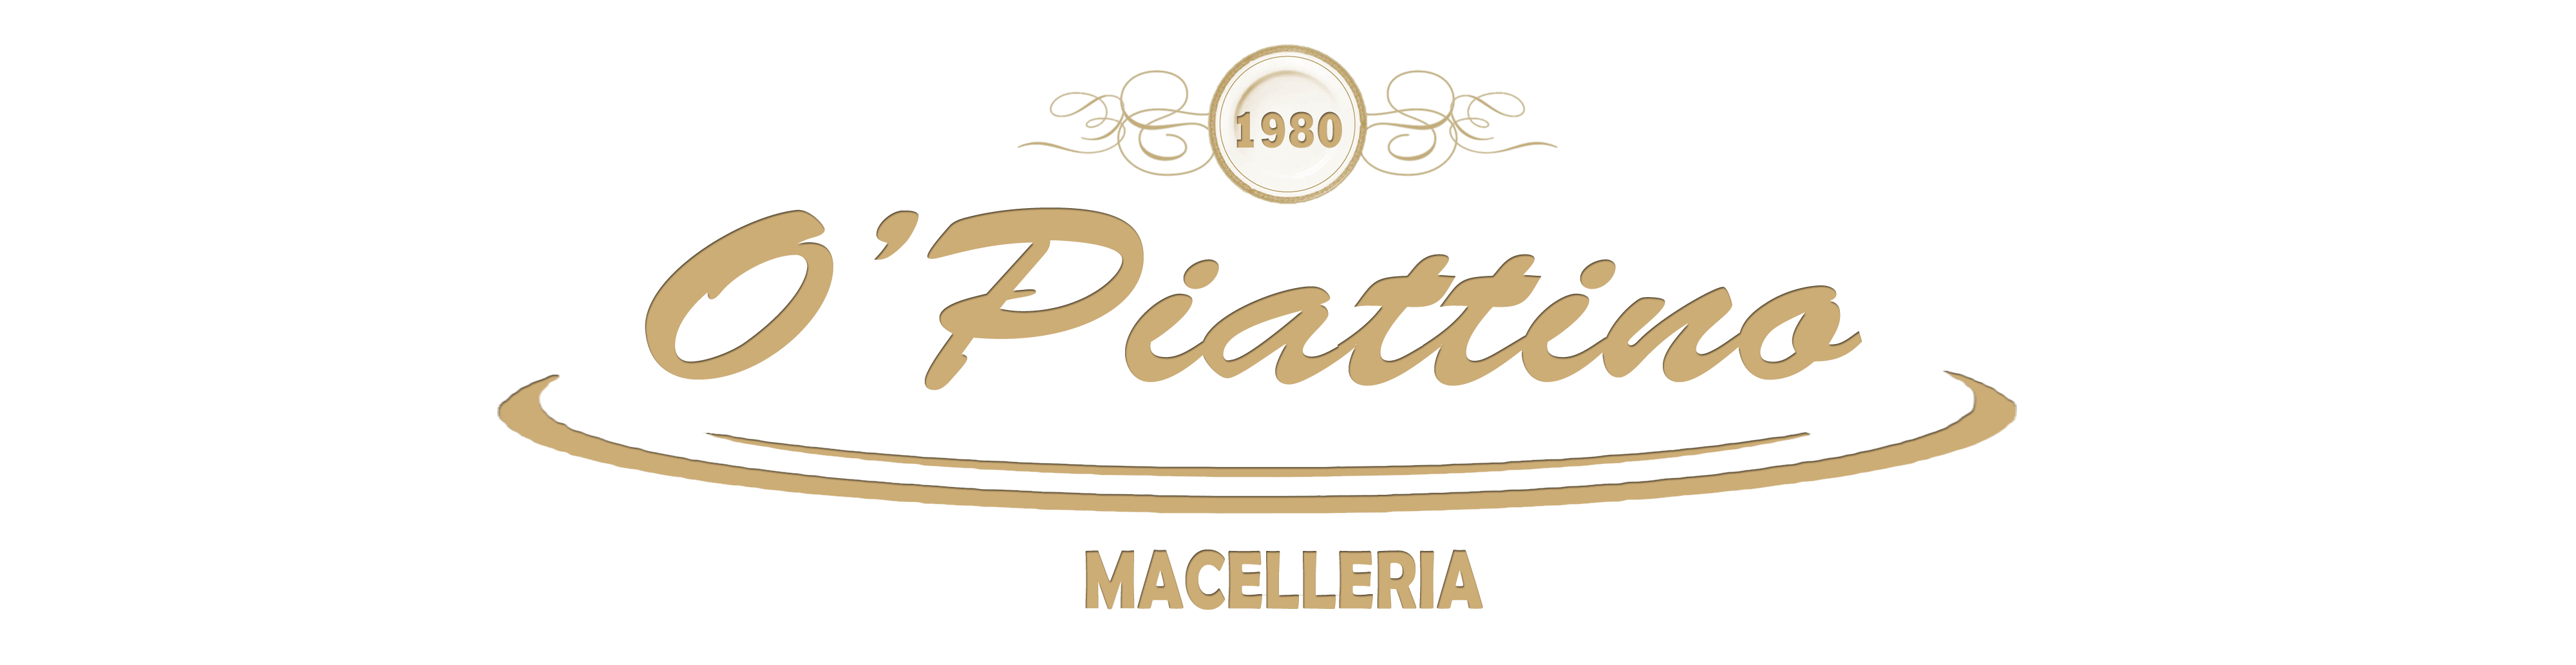 Macelleria O'Piattino